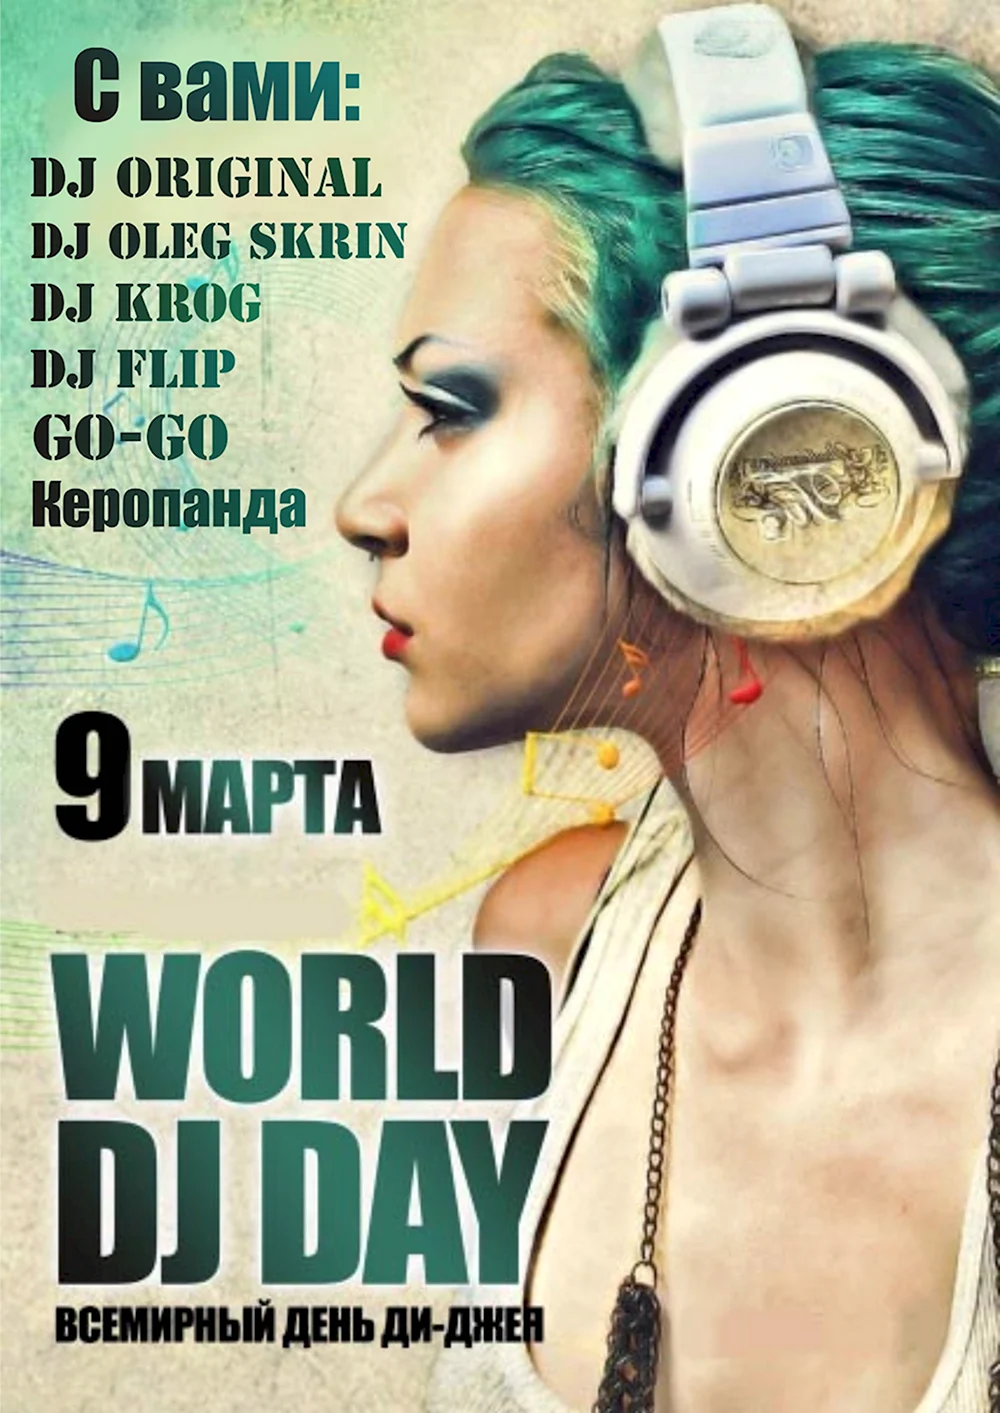 Всемирный день DJ